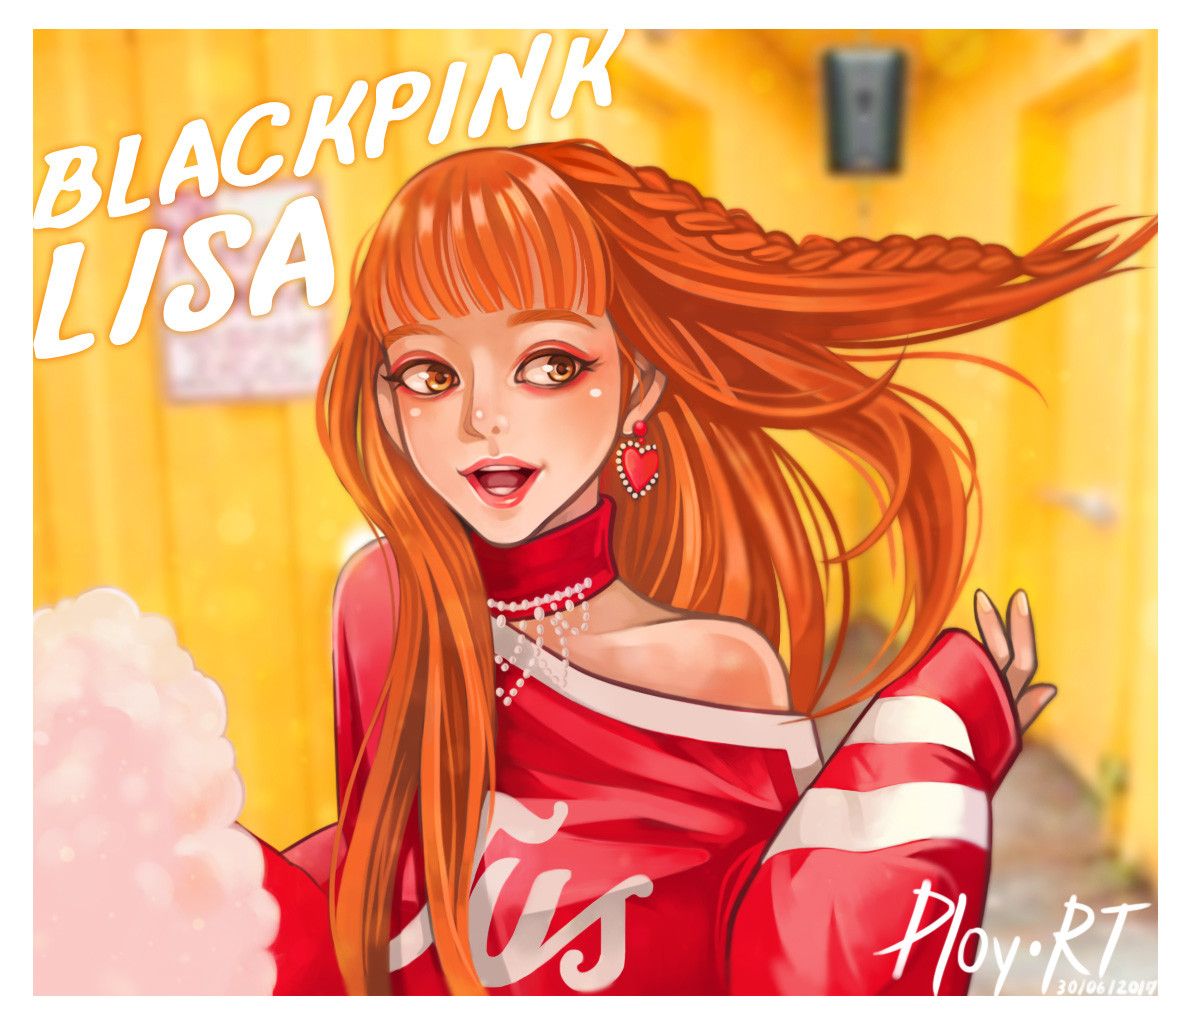 Lisa Blackpink Anime